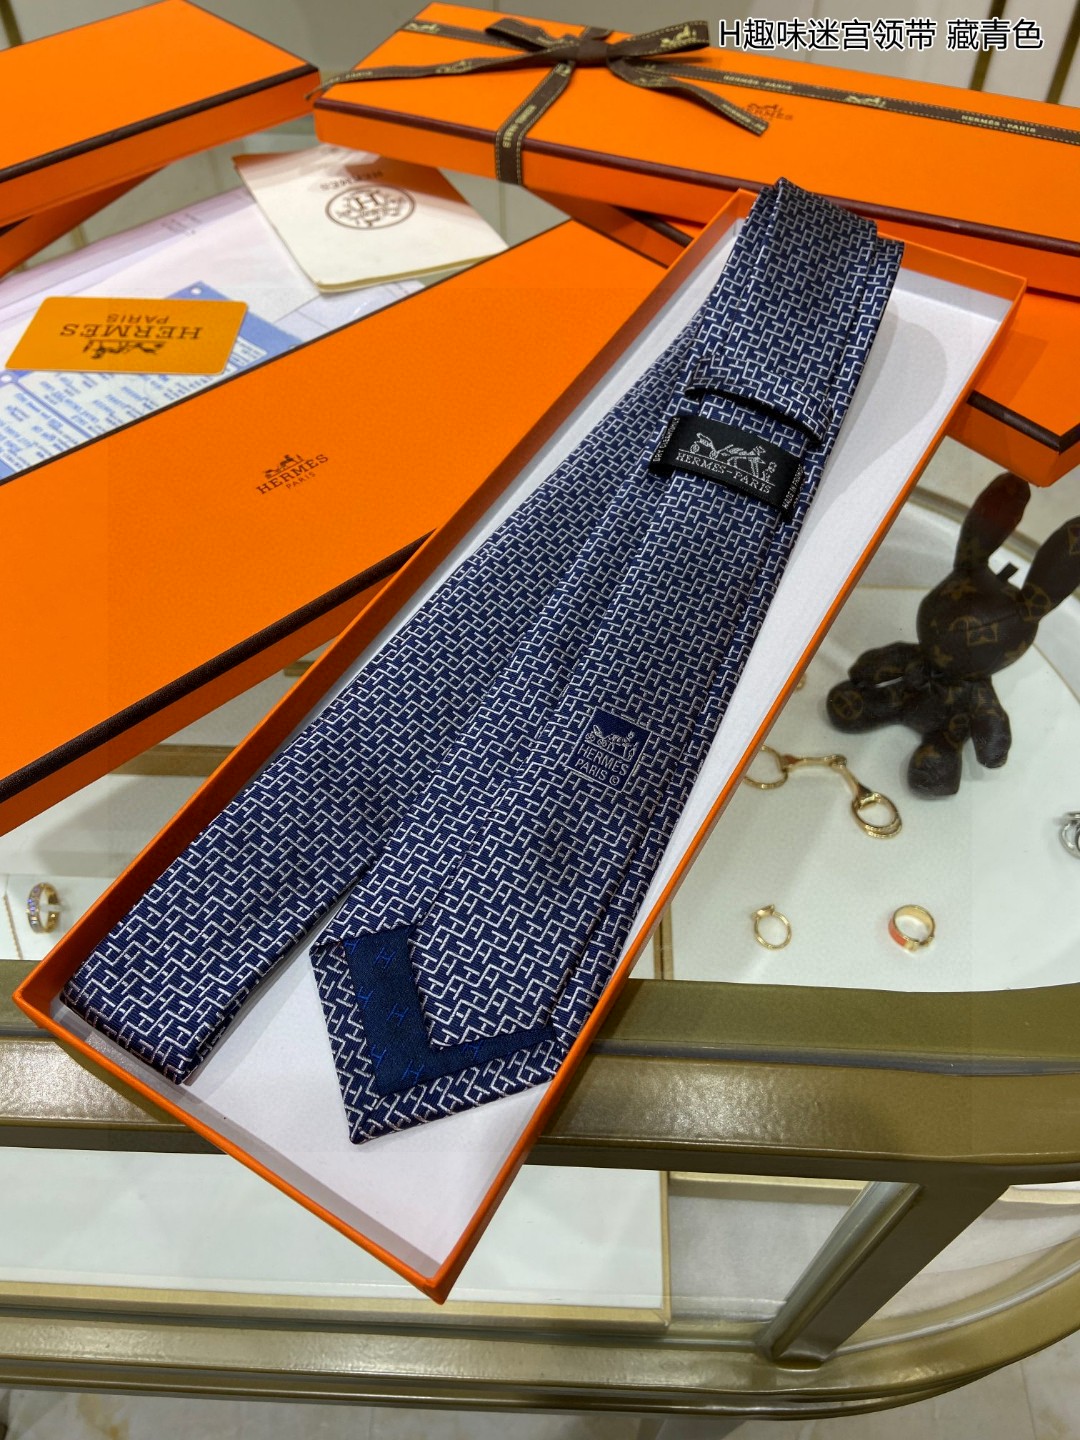 男士新款领带系列H趣味迷宫领带稀有H家每年都有一千条不同印花的领带面世从最初的多以几何图案表现骑术活动为